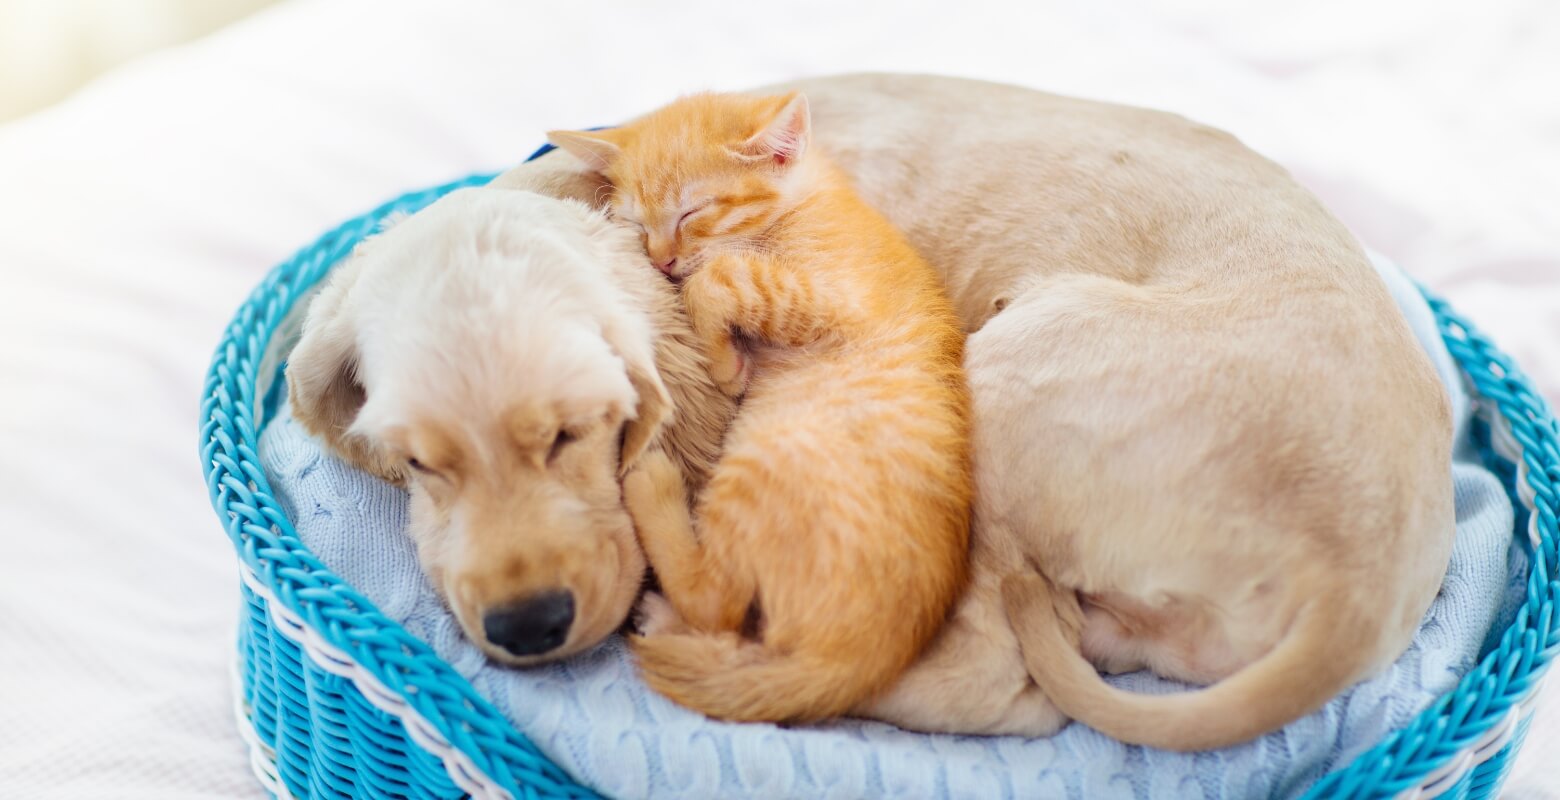 カゴの中で犬と猫が一緒に寝ている画像